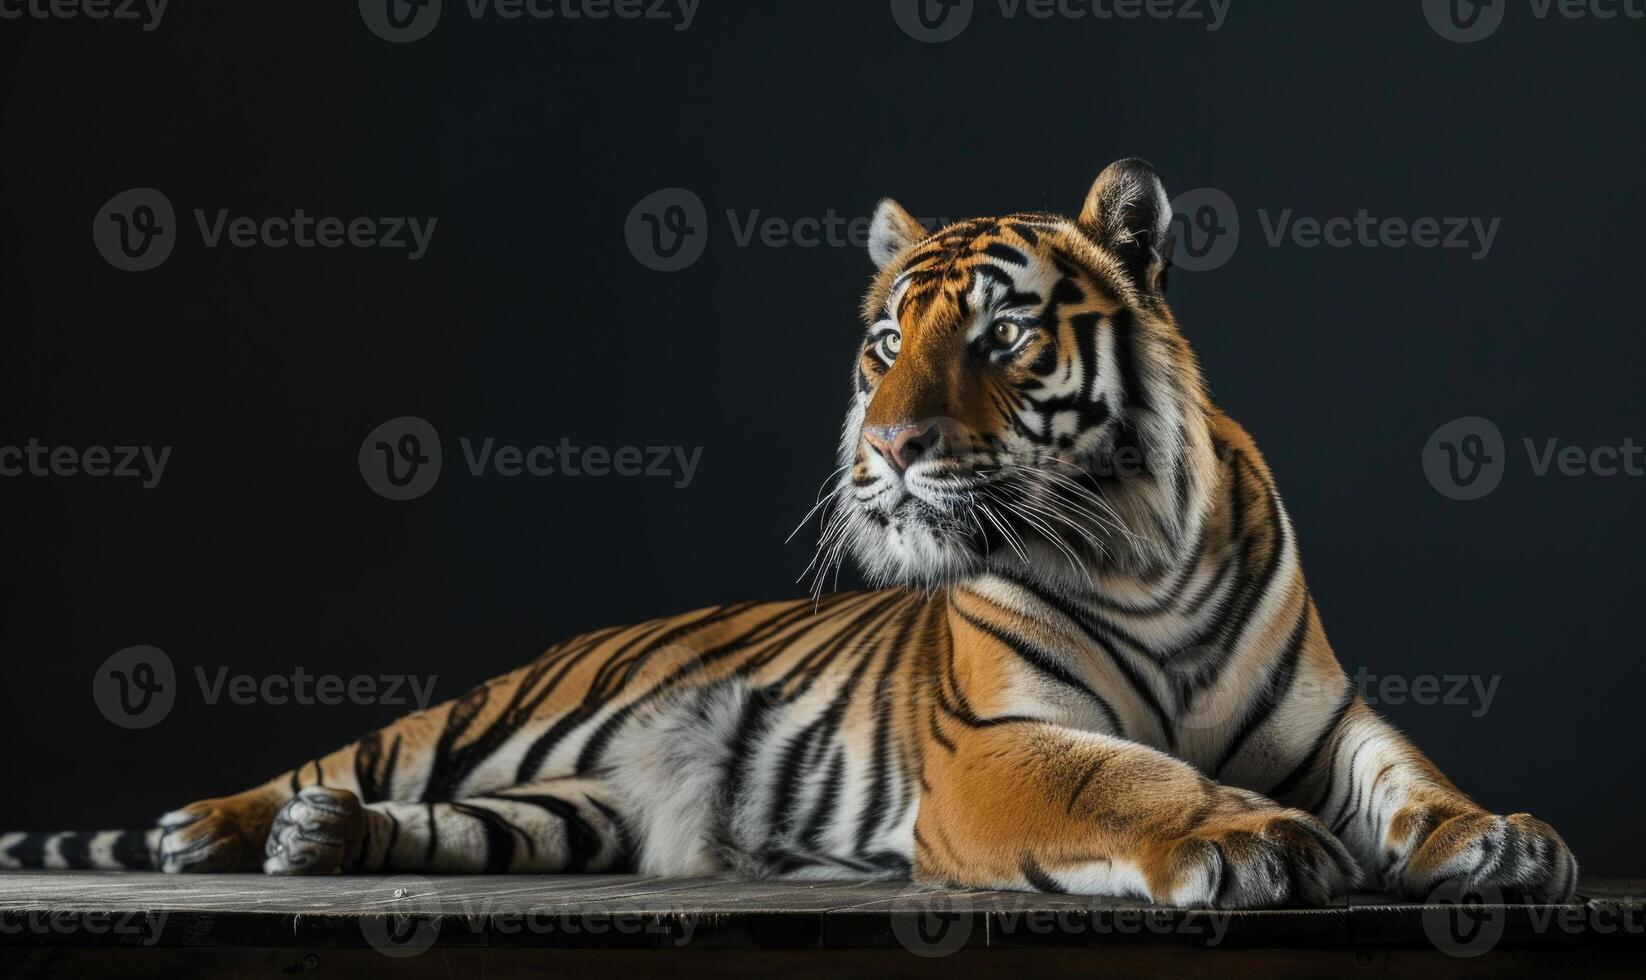 An Amur tiger posed on a platform under studio lights, black background photo